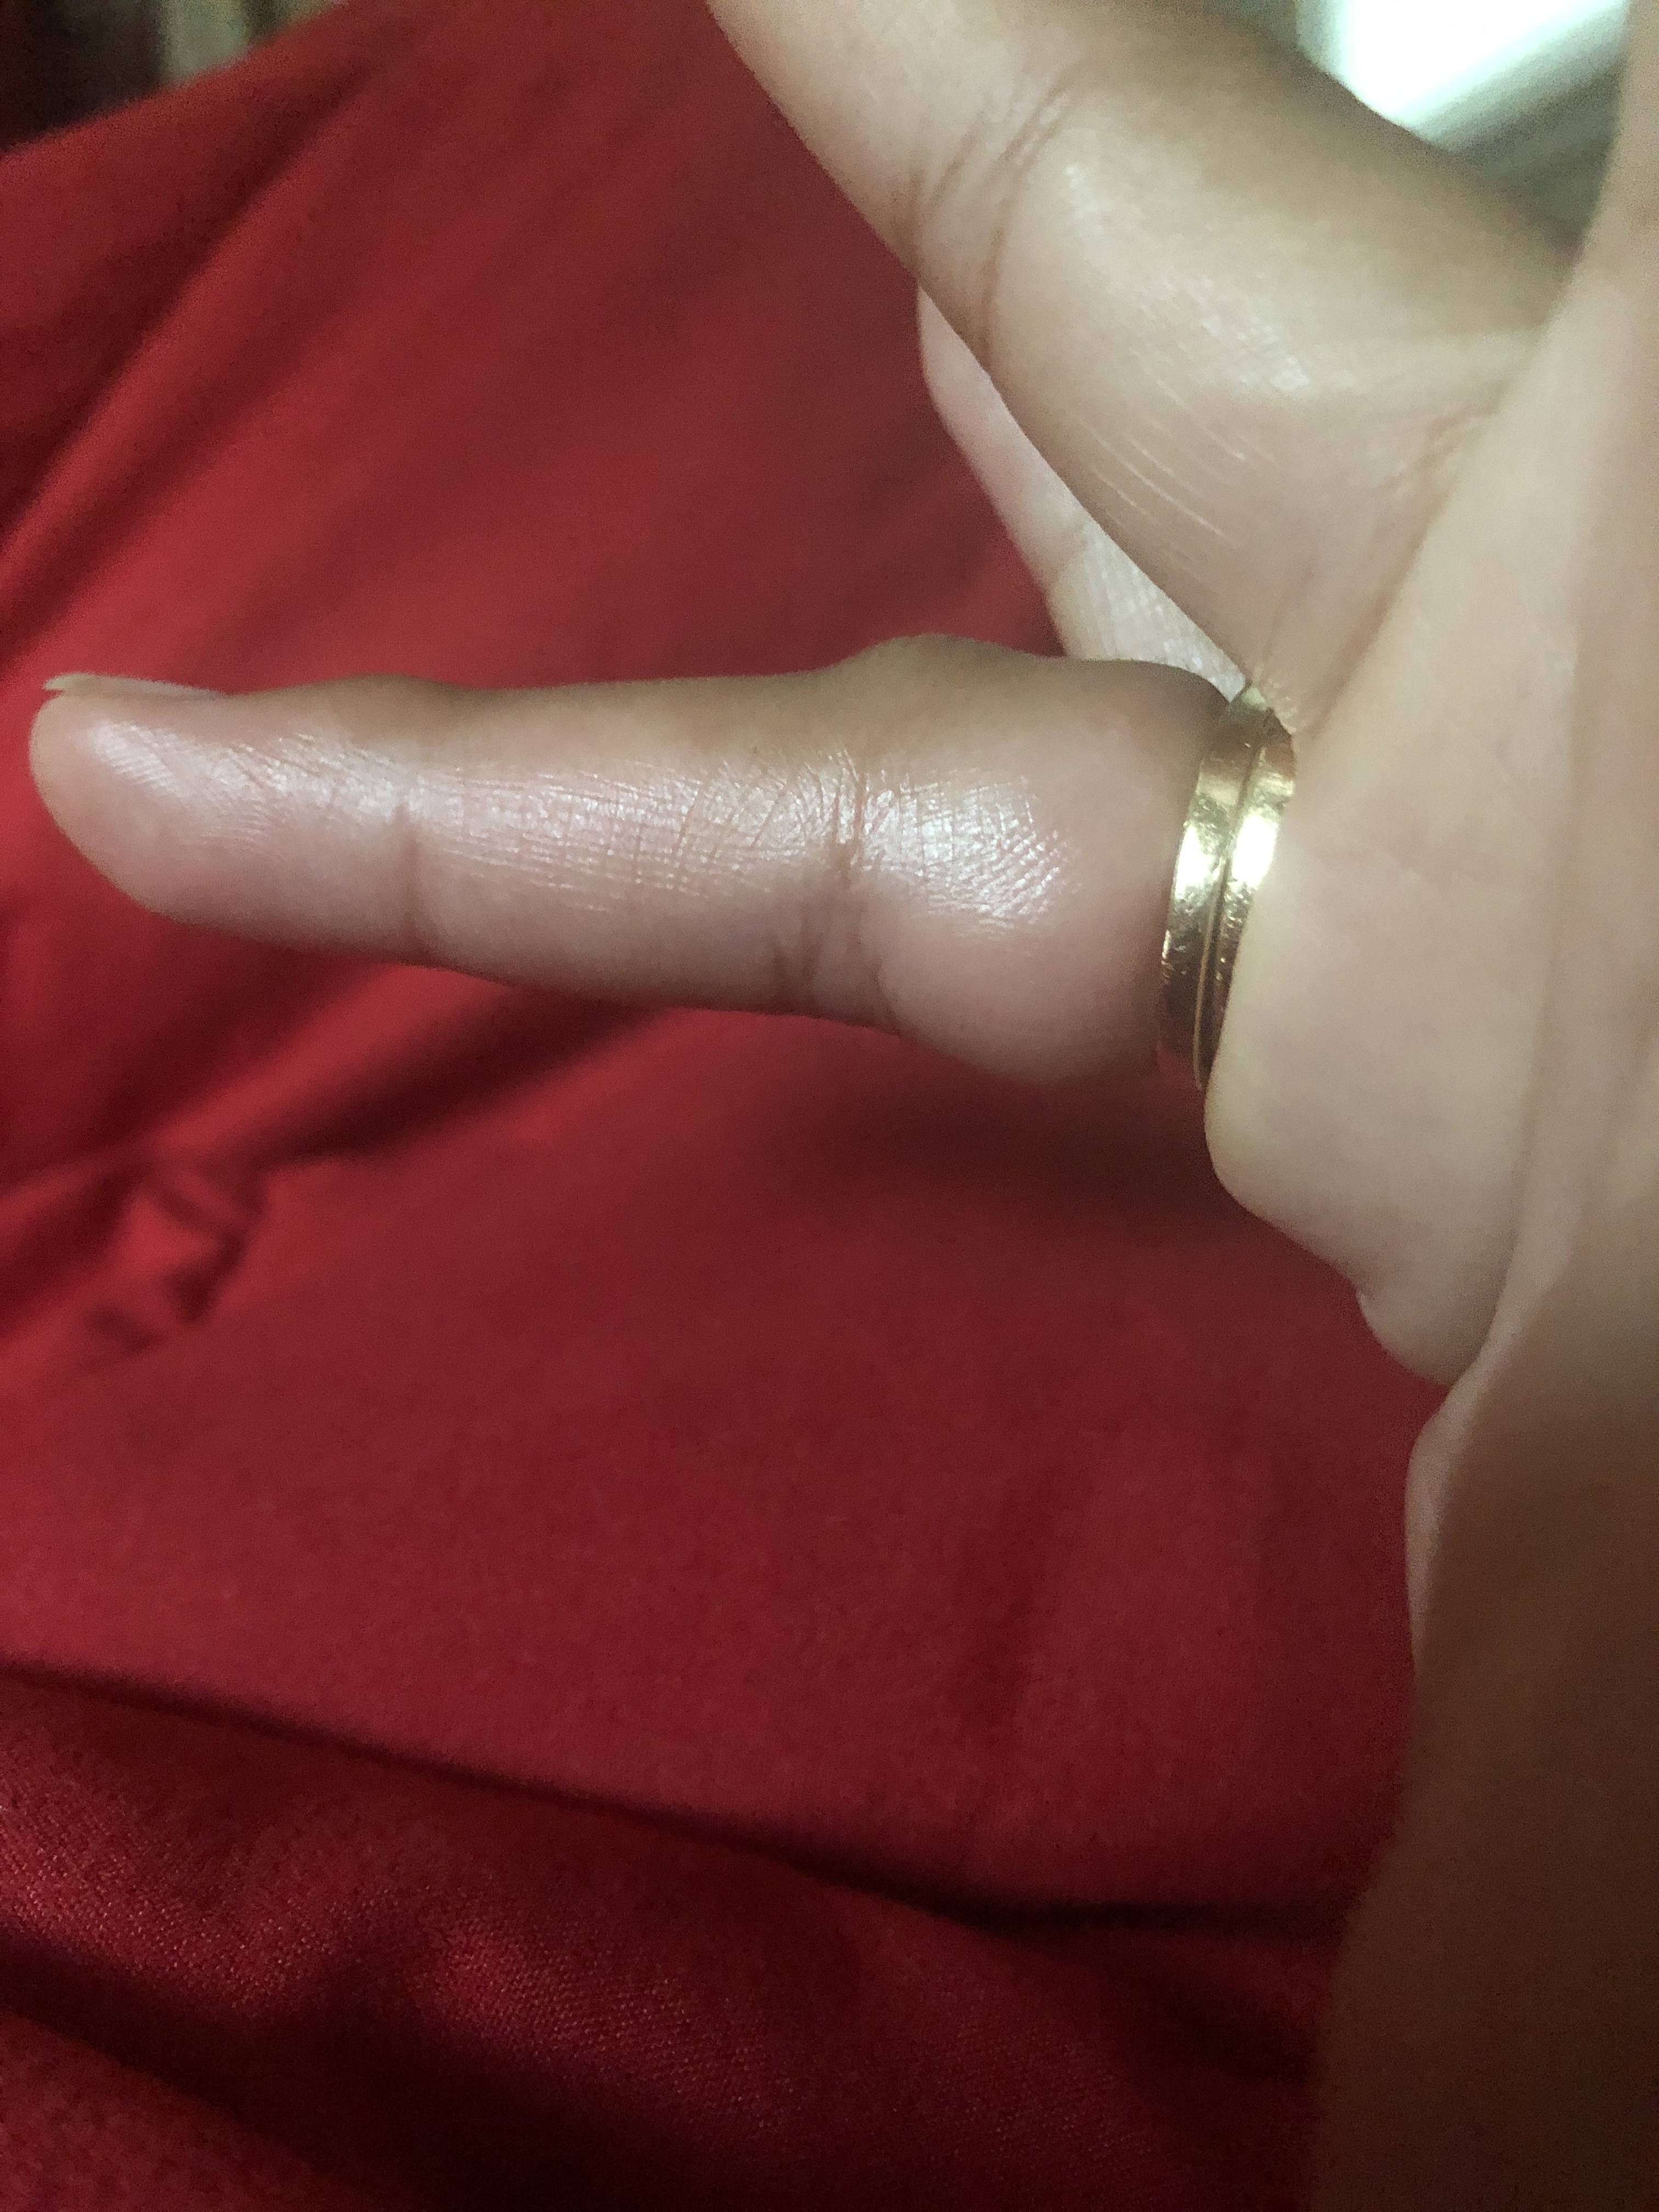 finger